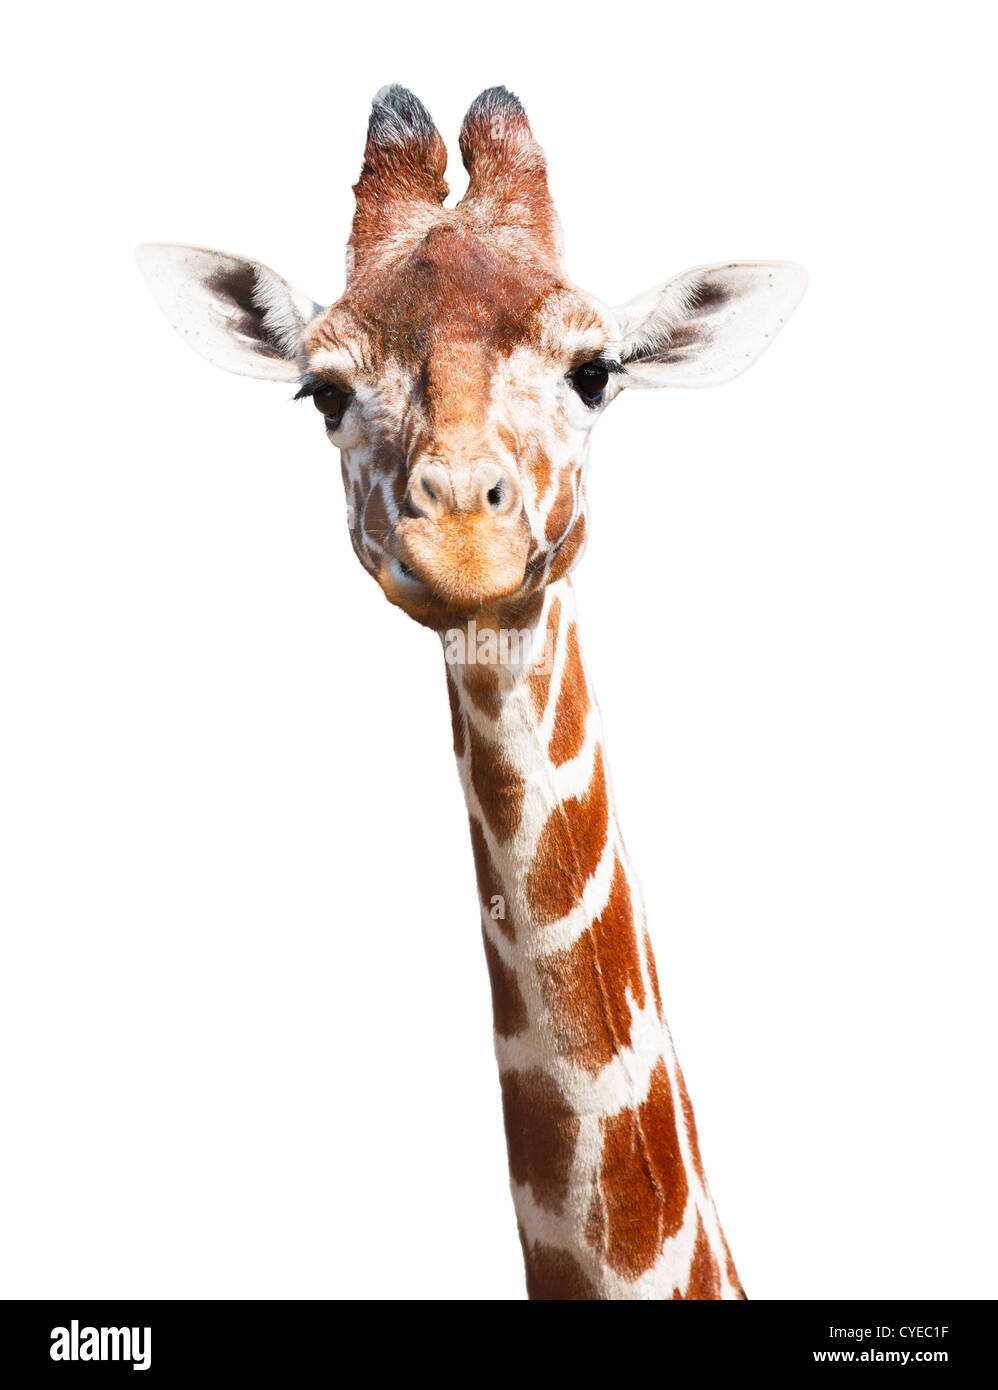 Cabeza y cuello jirafa aisladas contra un fondo blanco con trazado de recorte Foto de stock